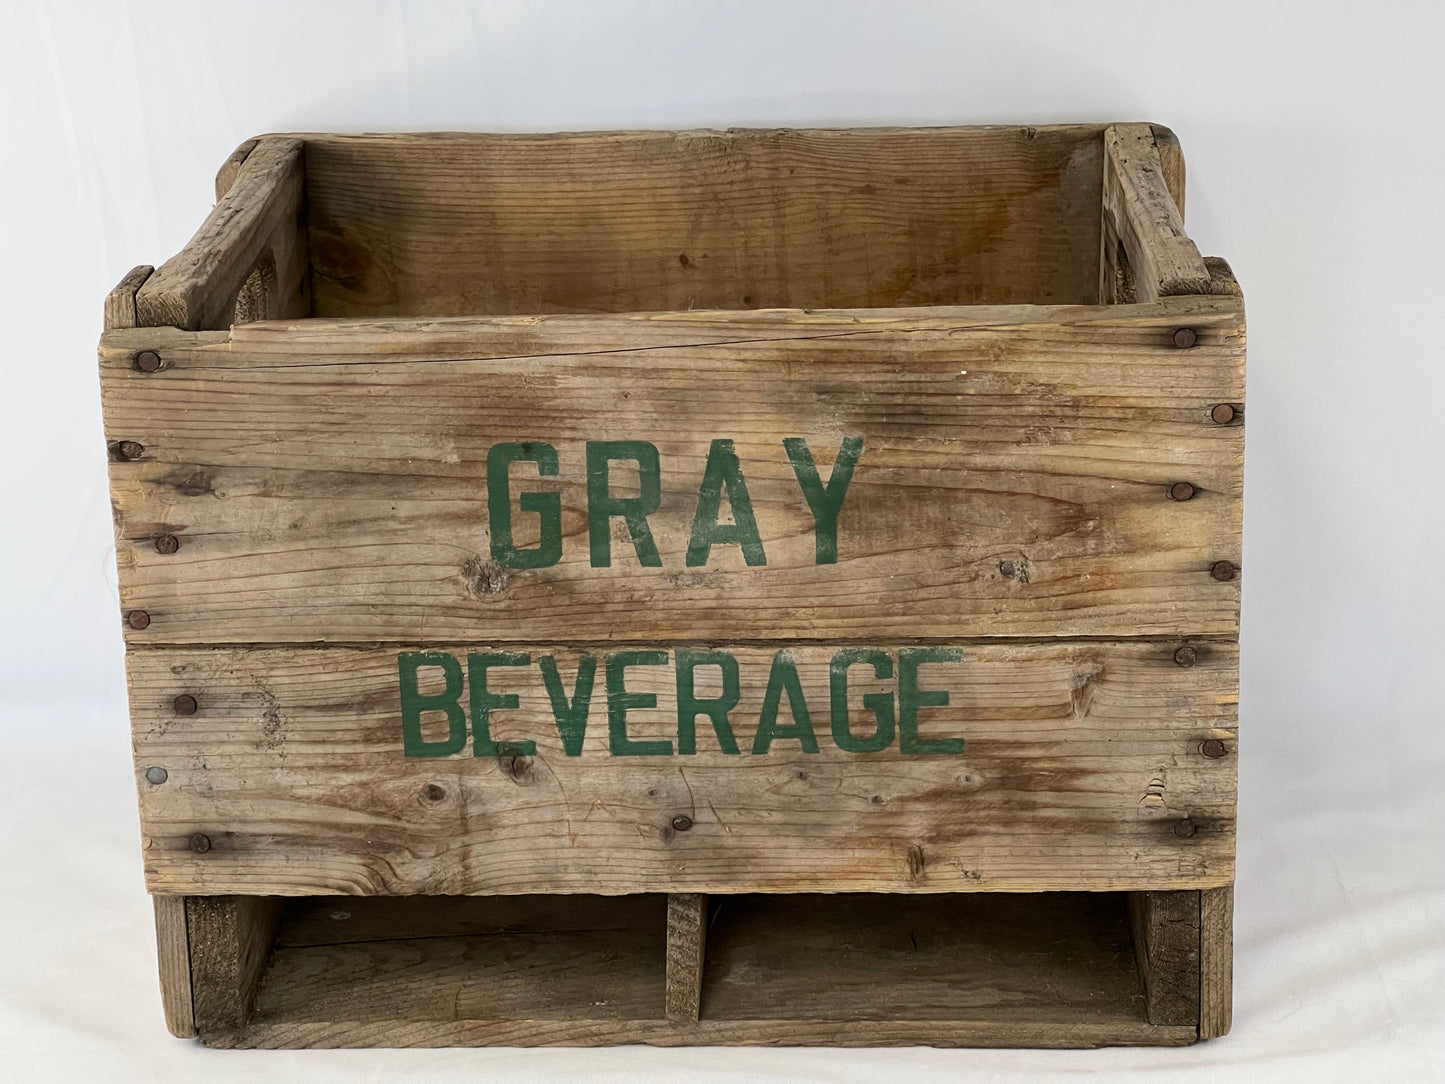 Grandma Attic Vintage Gray Beverage Wood Soda Pop Case Excellent Condition